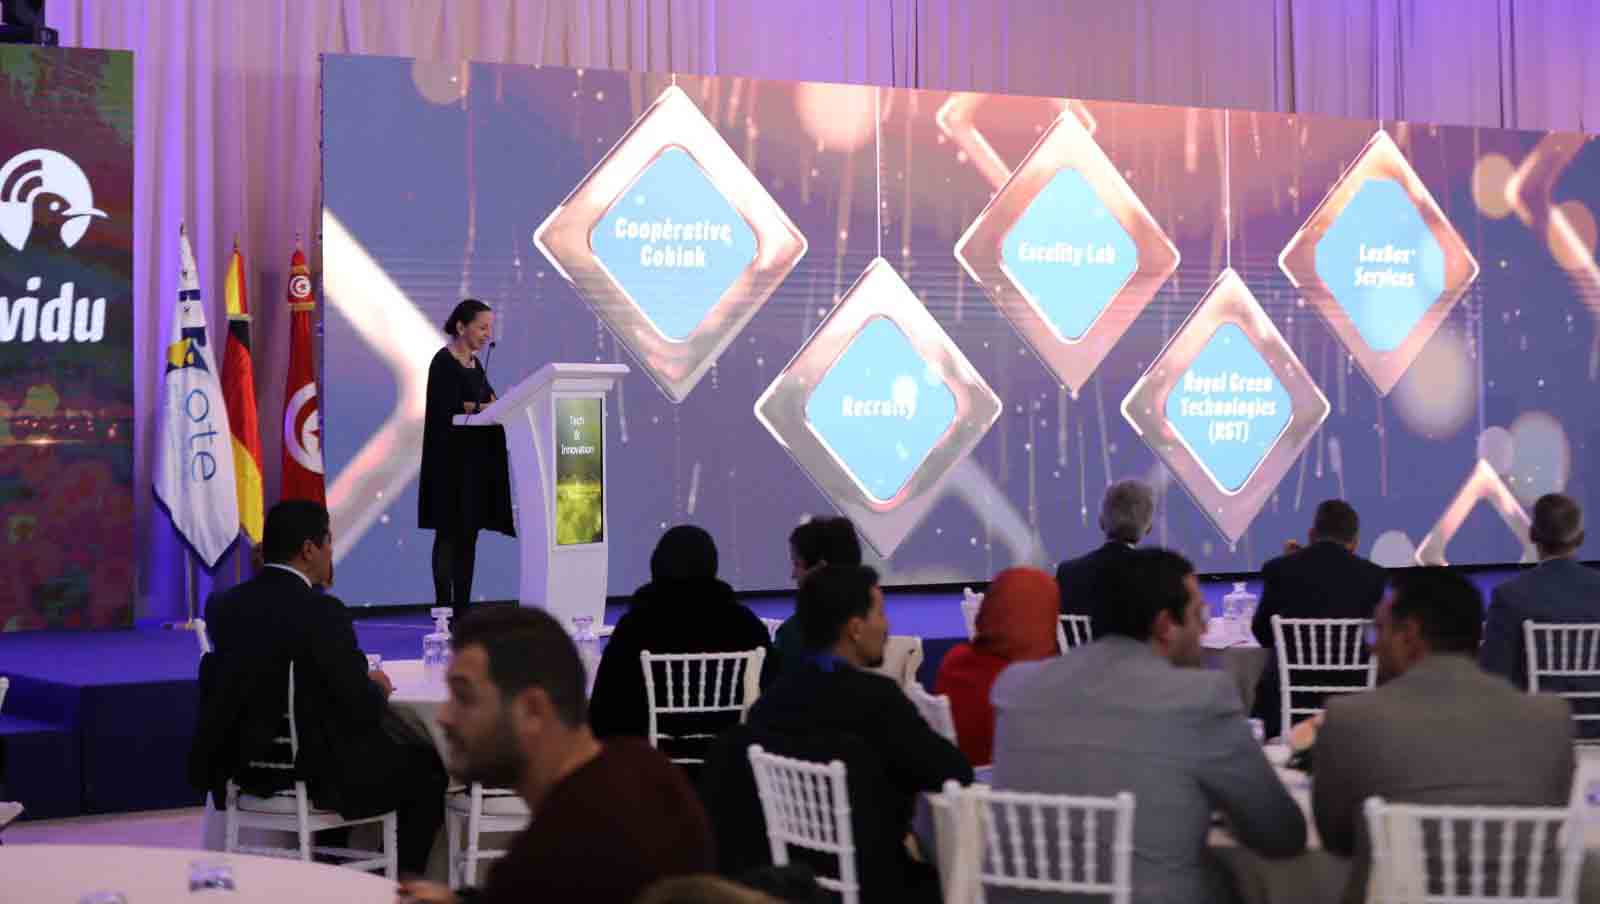 Le projet WIDU célèbre les micros et petites entreprises tunisiennes dans le cadre dulancement officiel de sa deuxième phase